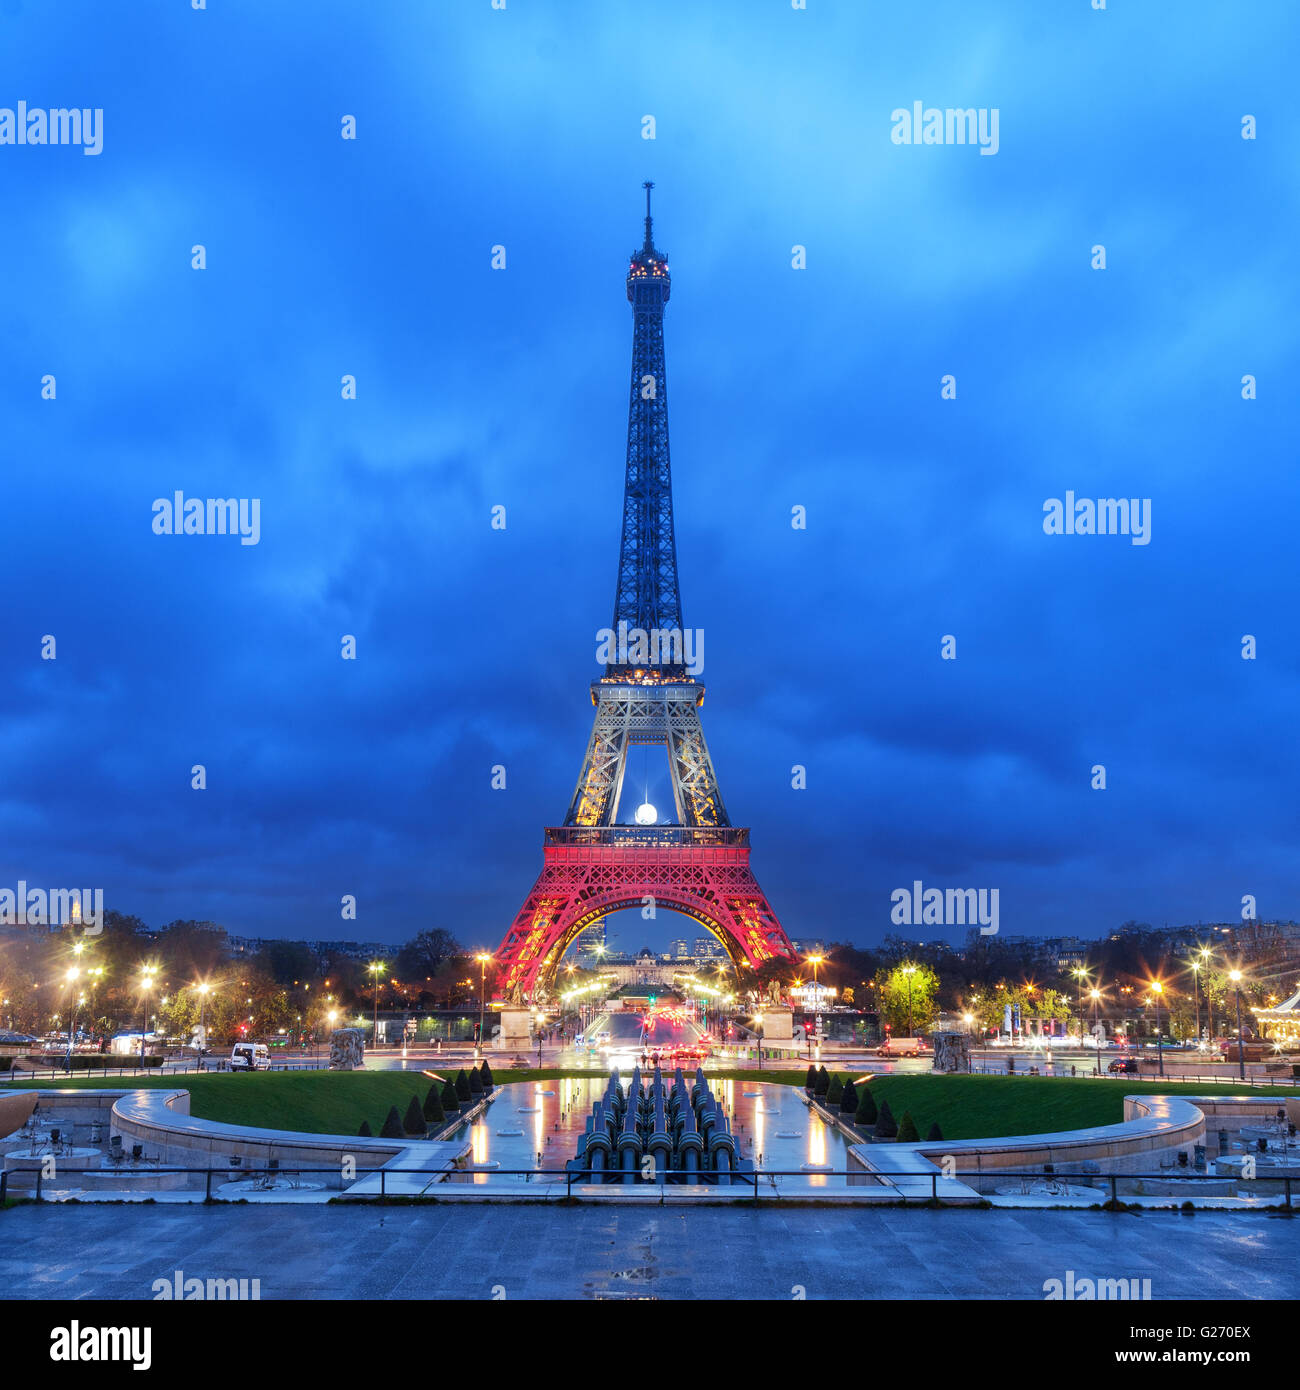 PARIS, Frankreich - 20. November 2015: Eiffelturm beleuchtet mit Farben der französischen Flagge nach dem 13. November Freitag Terro Stockfoto